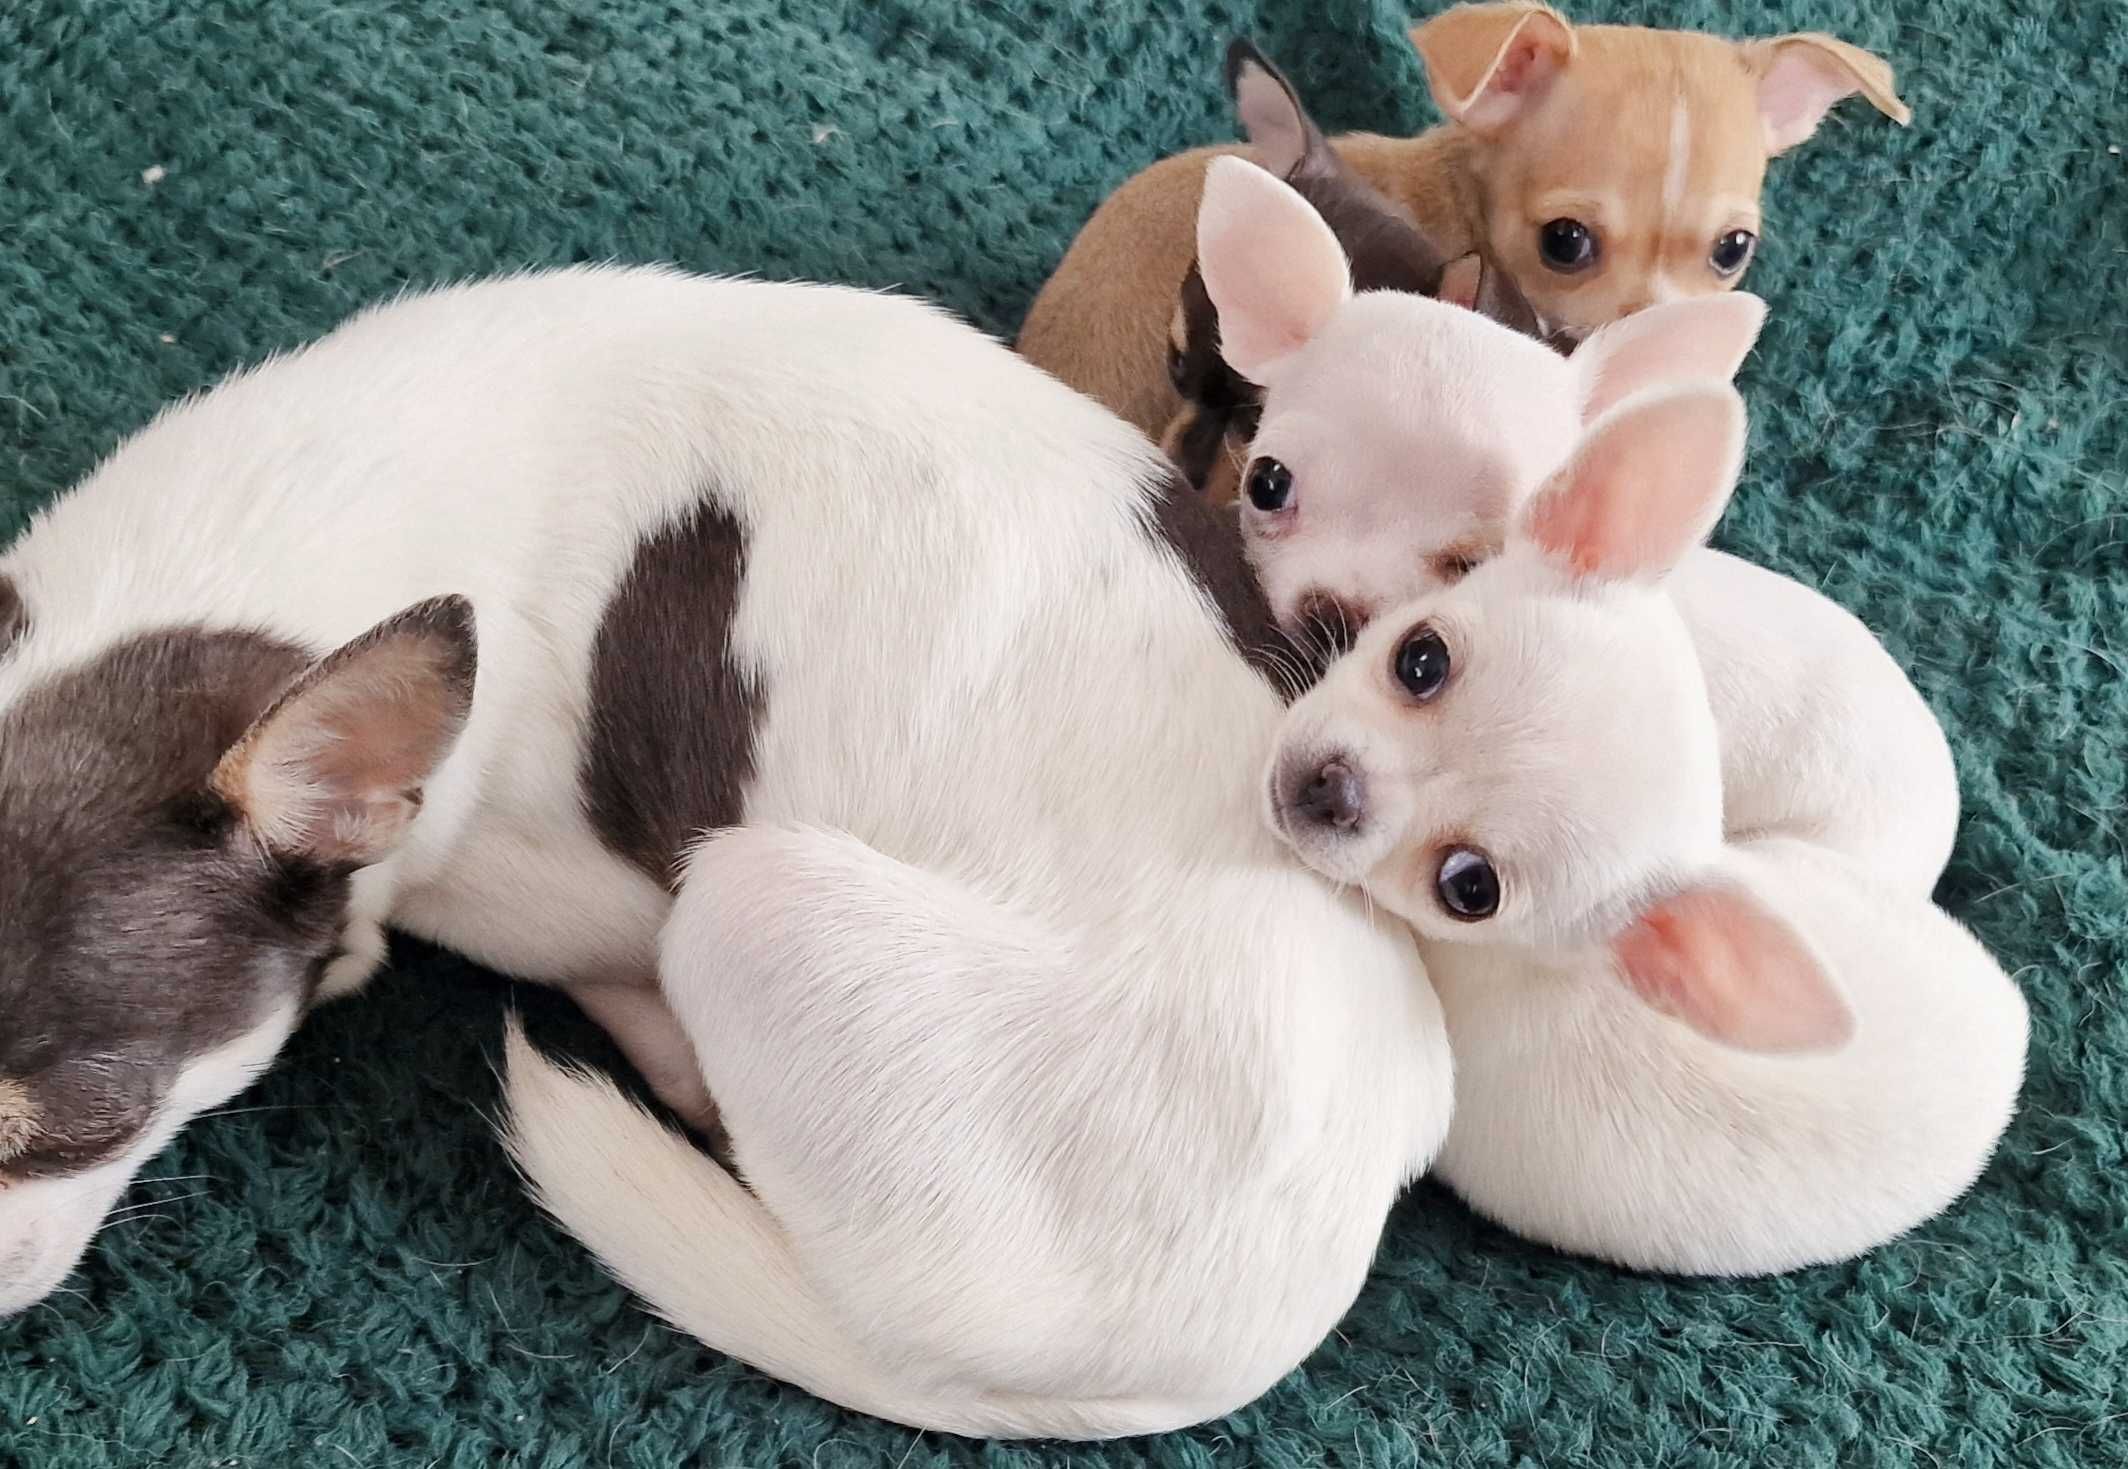 Ultra mini szczeniaczek XXS Chihuahua z rodowodem